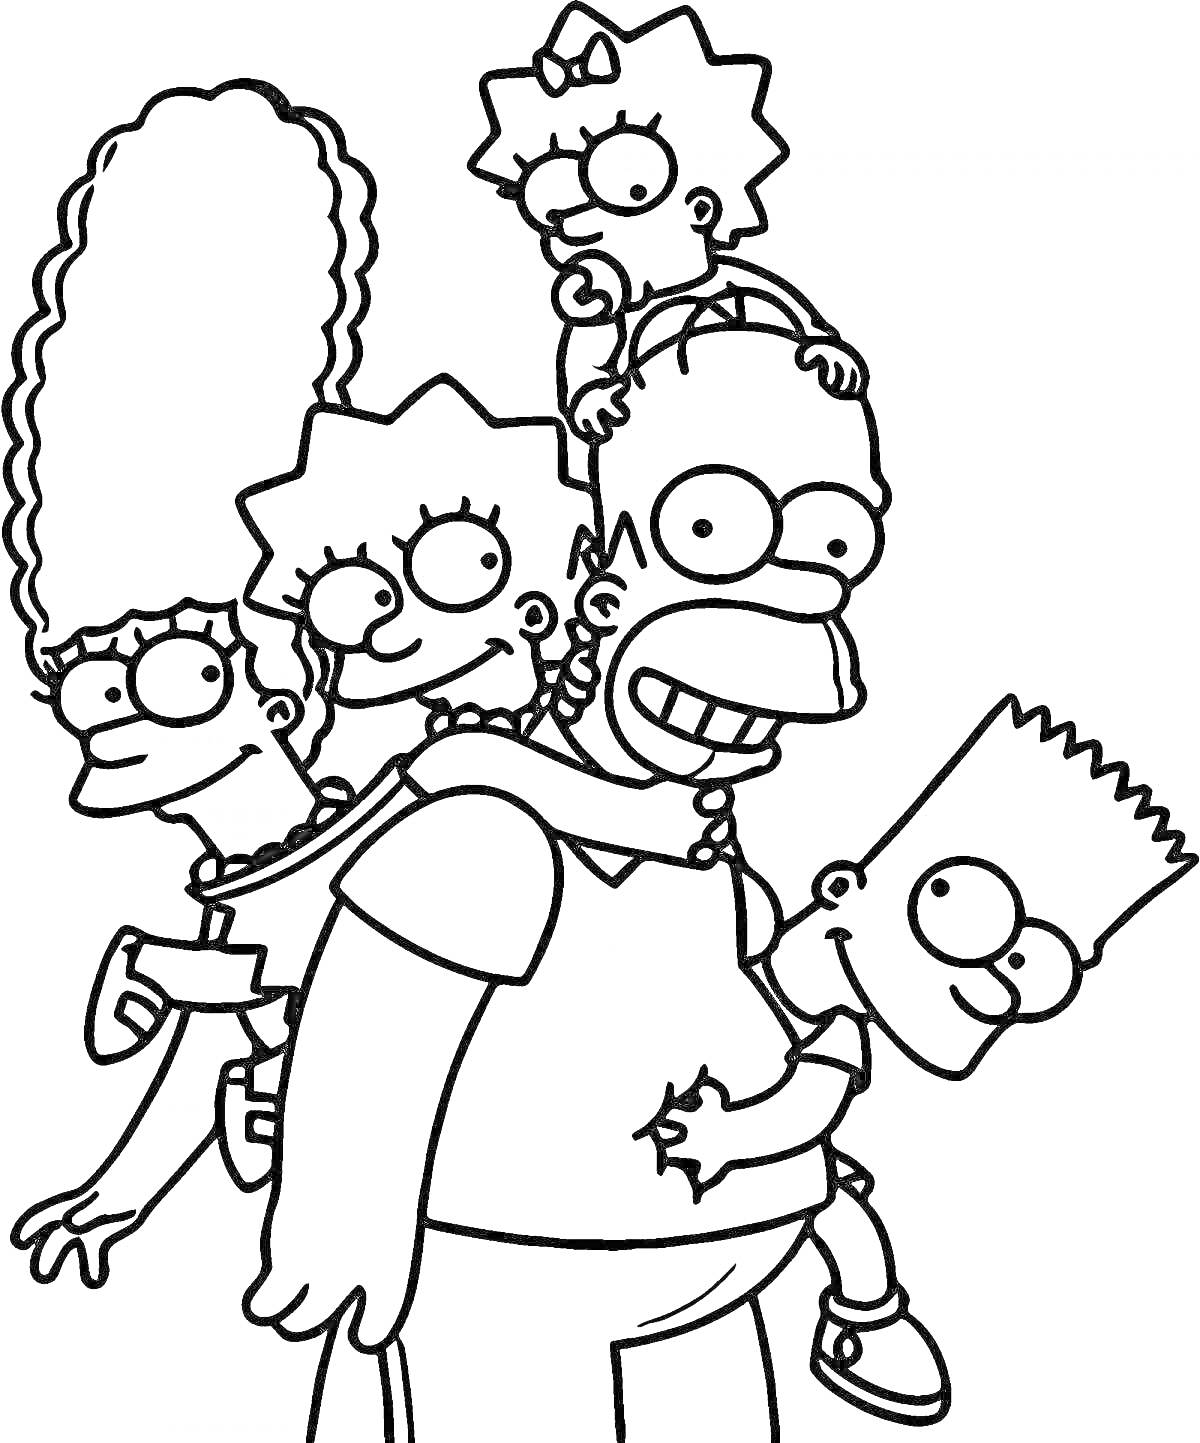 Раскраска Семья Симпсонов - Мардж, Лиза, Мэгги, Гомер и Барт